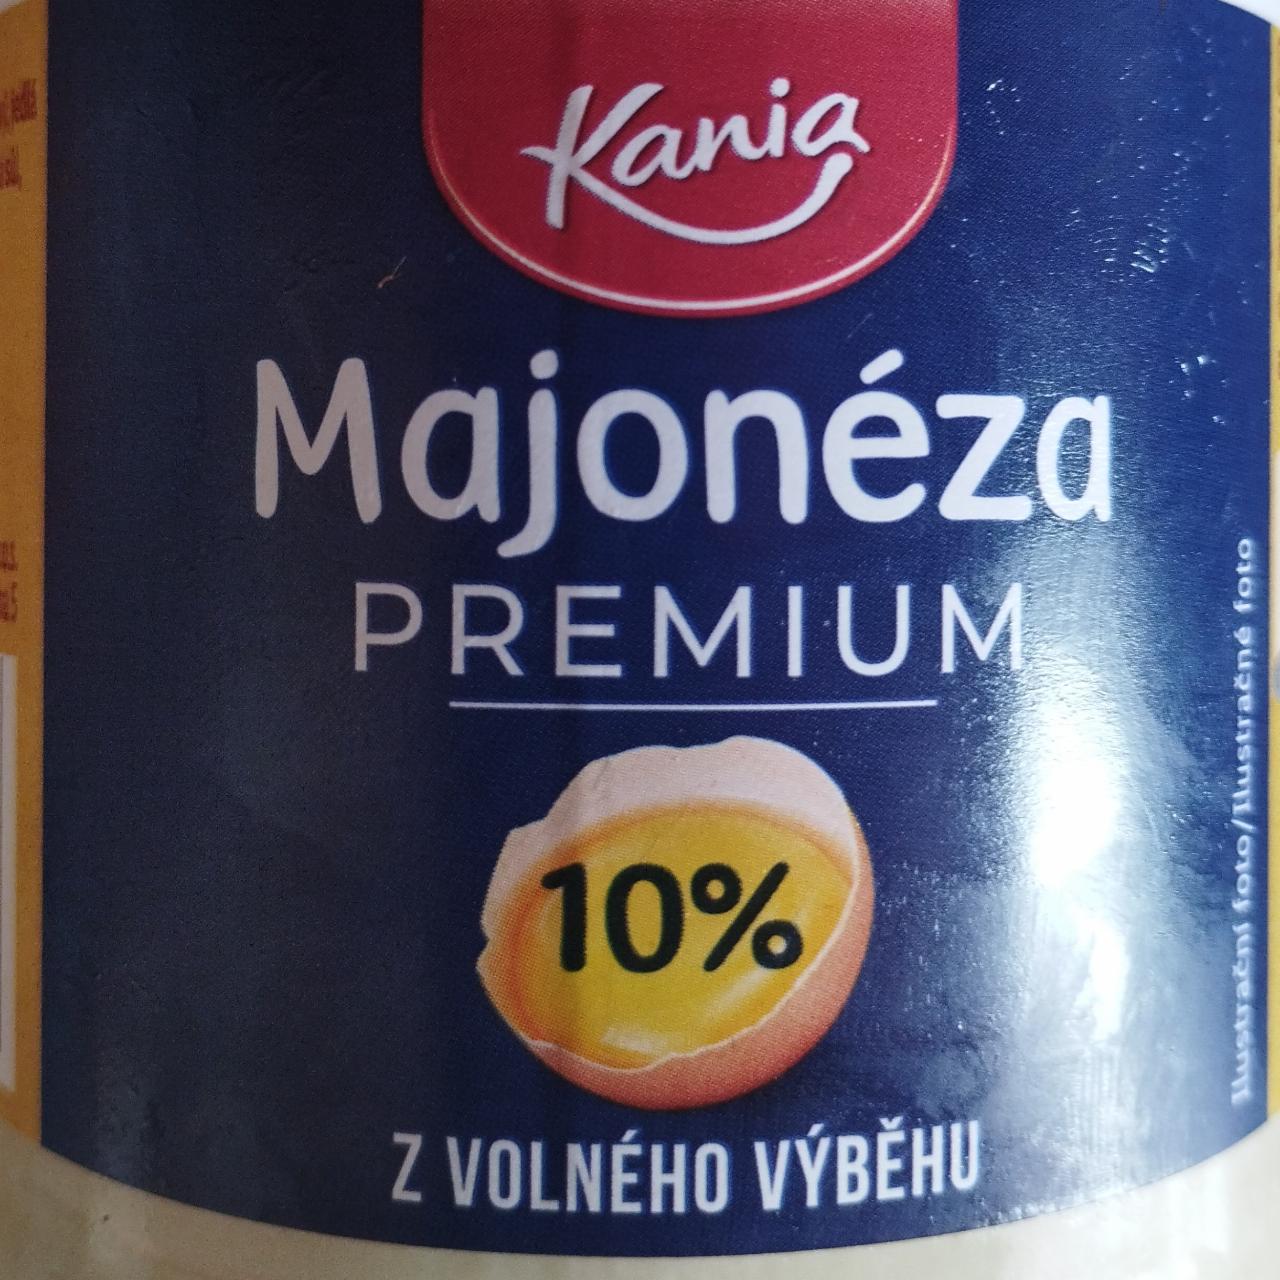 Fotografie - Majonéza Premium Kania